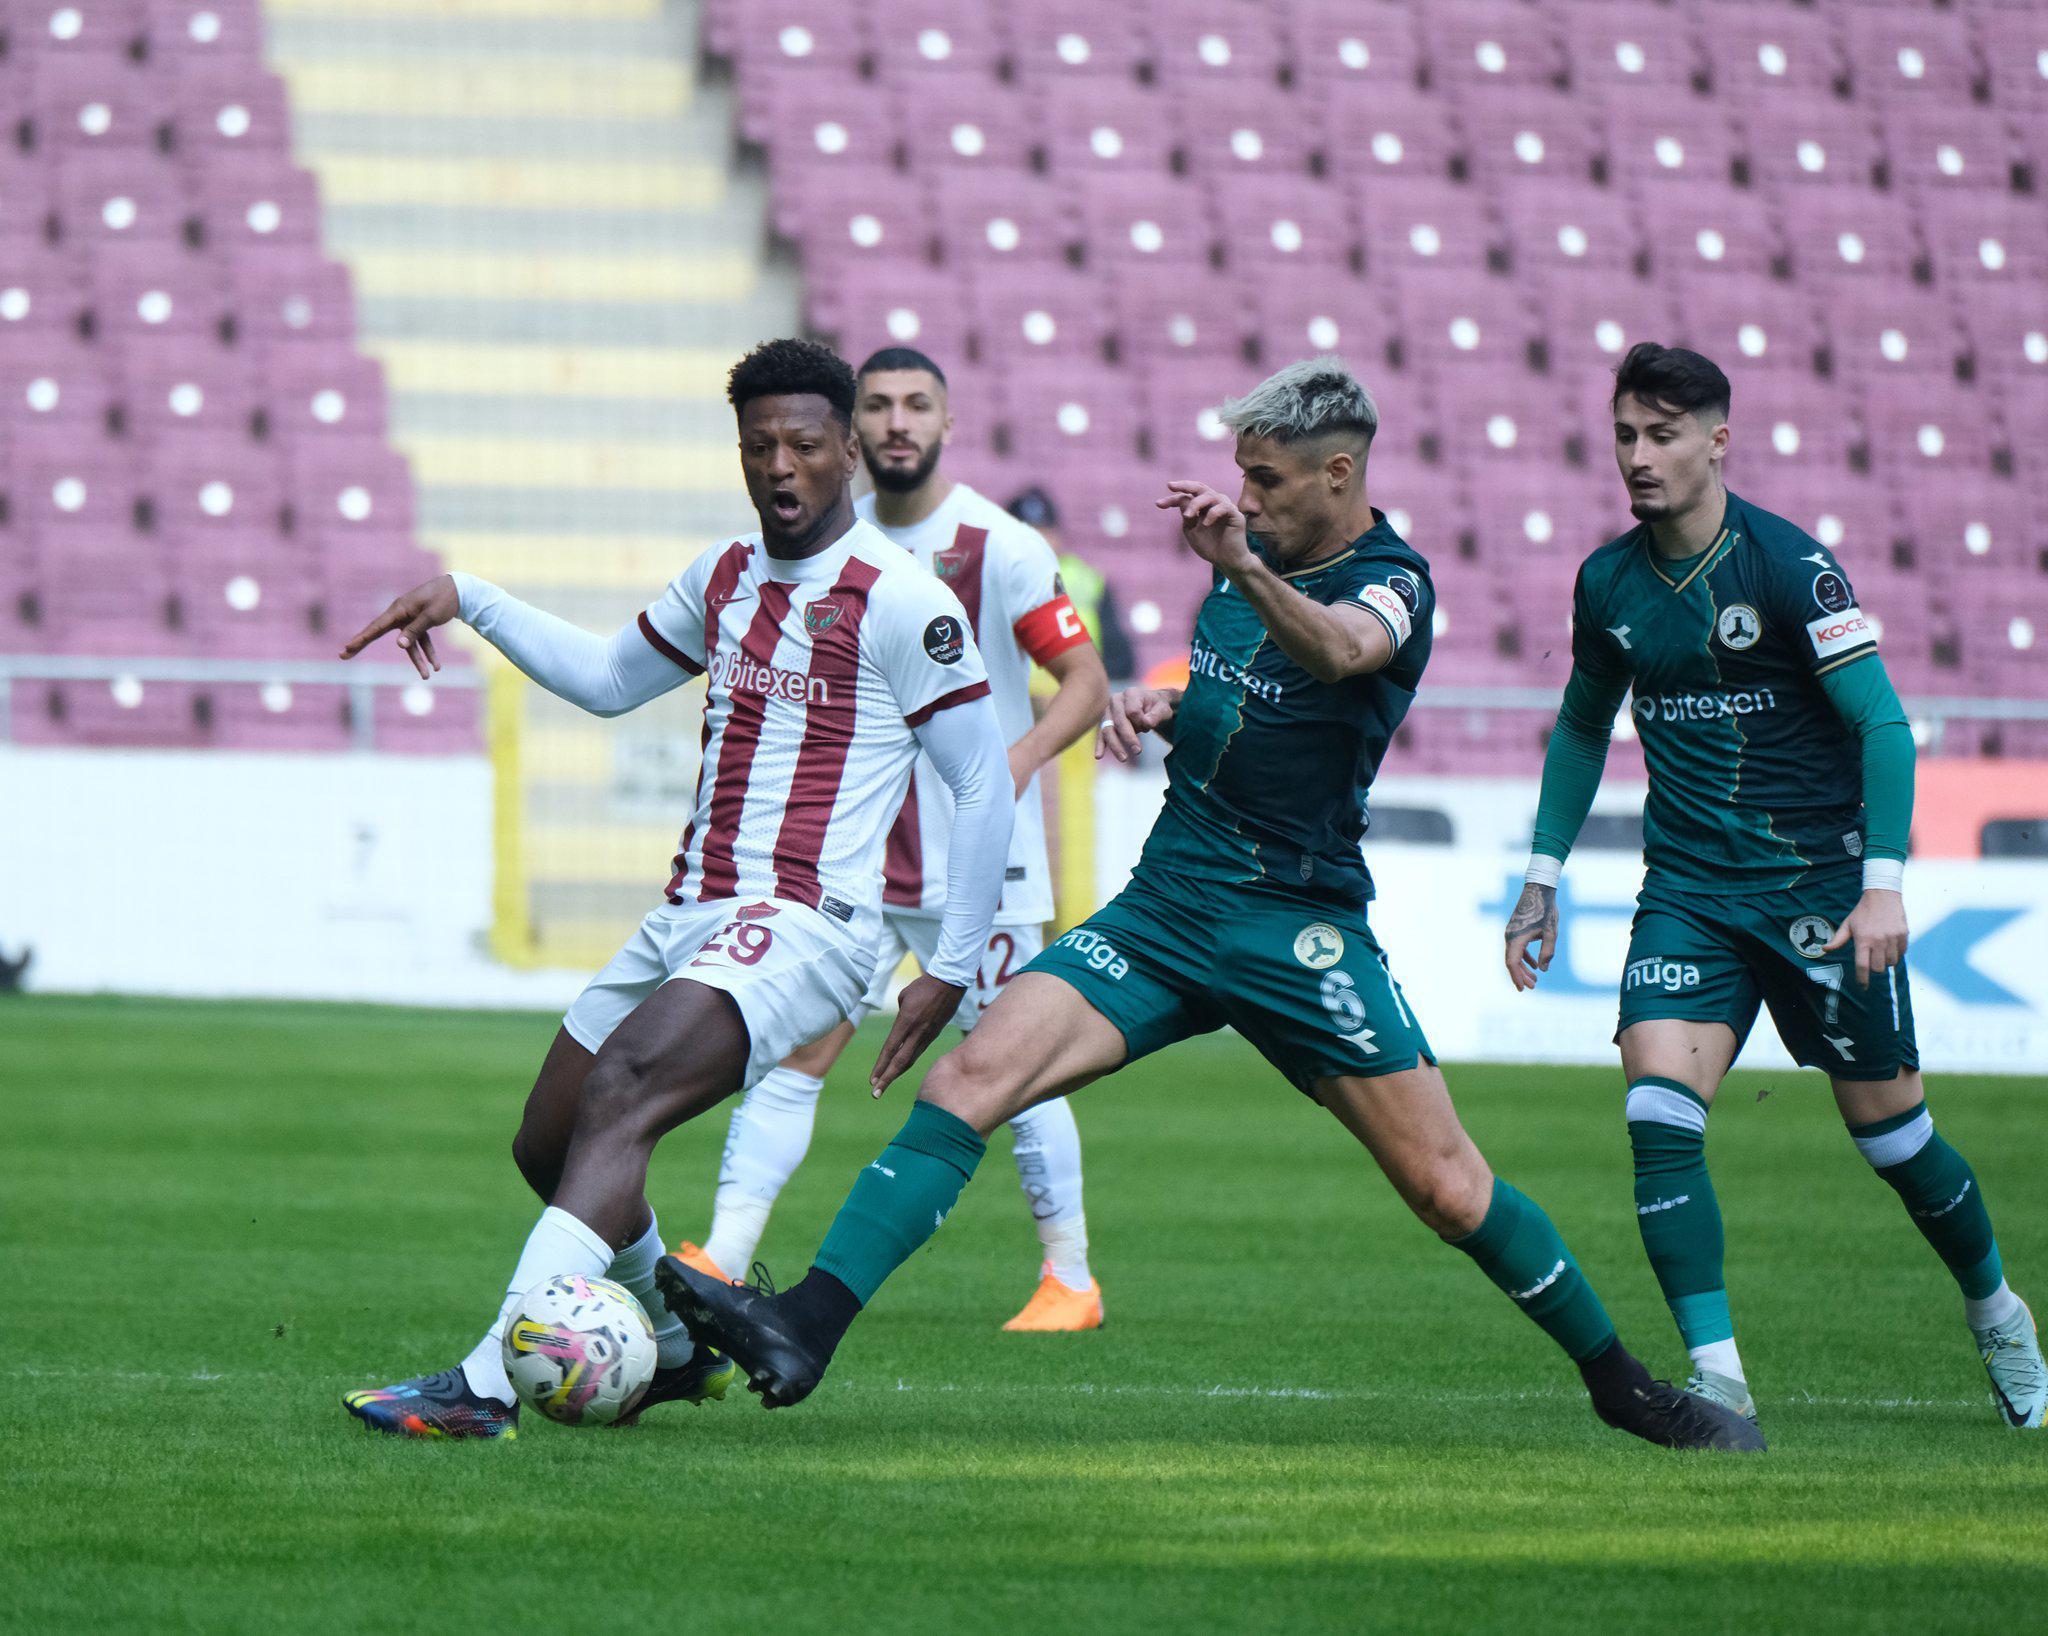 ÖZET | Hatayspor - Giresunspor maç sonucu 1-1